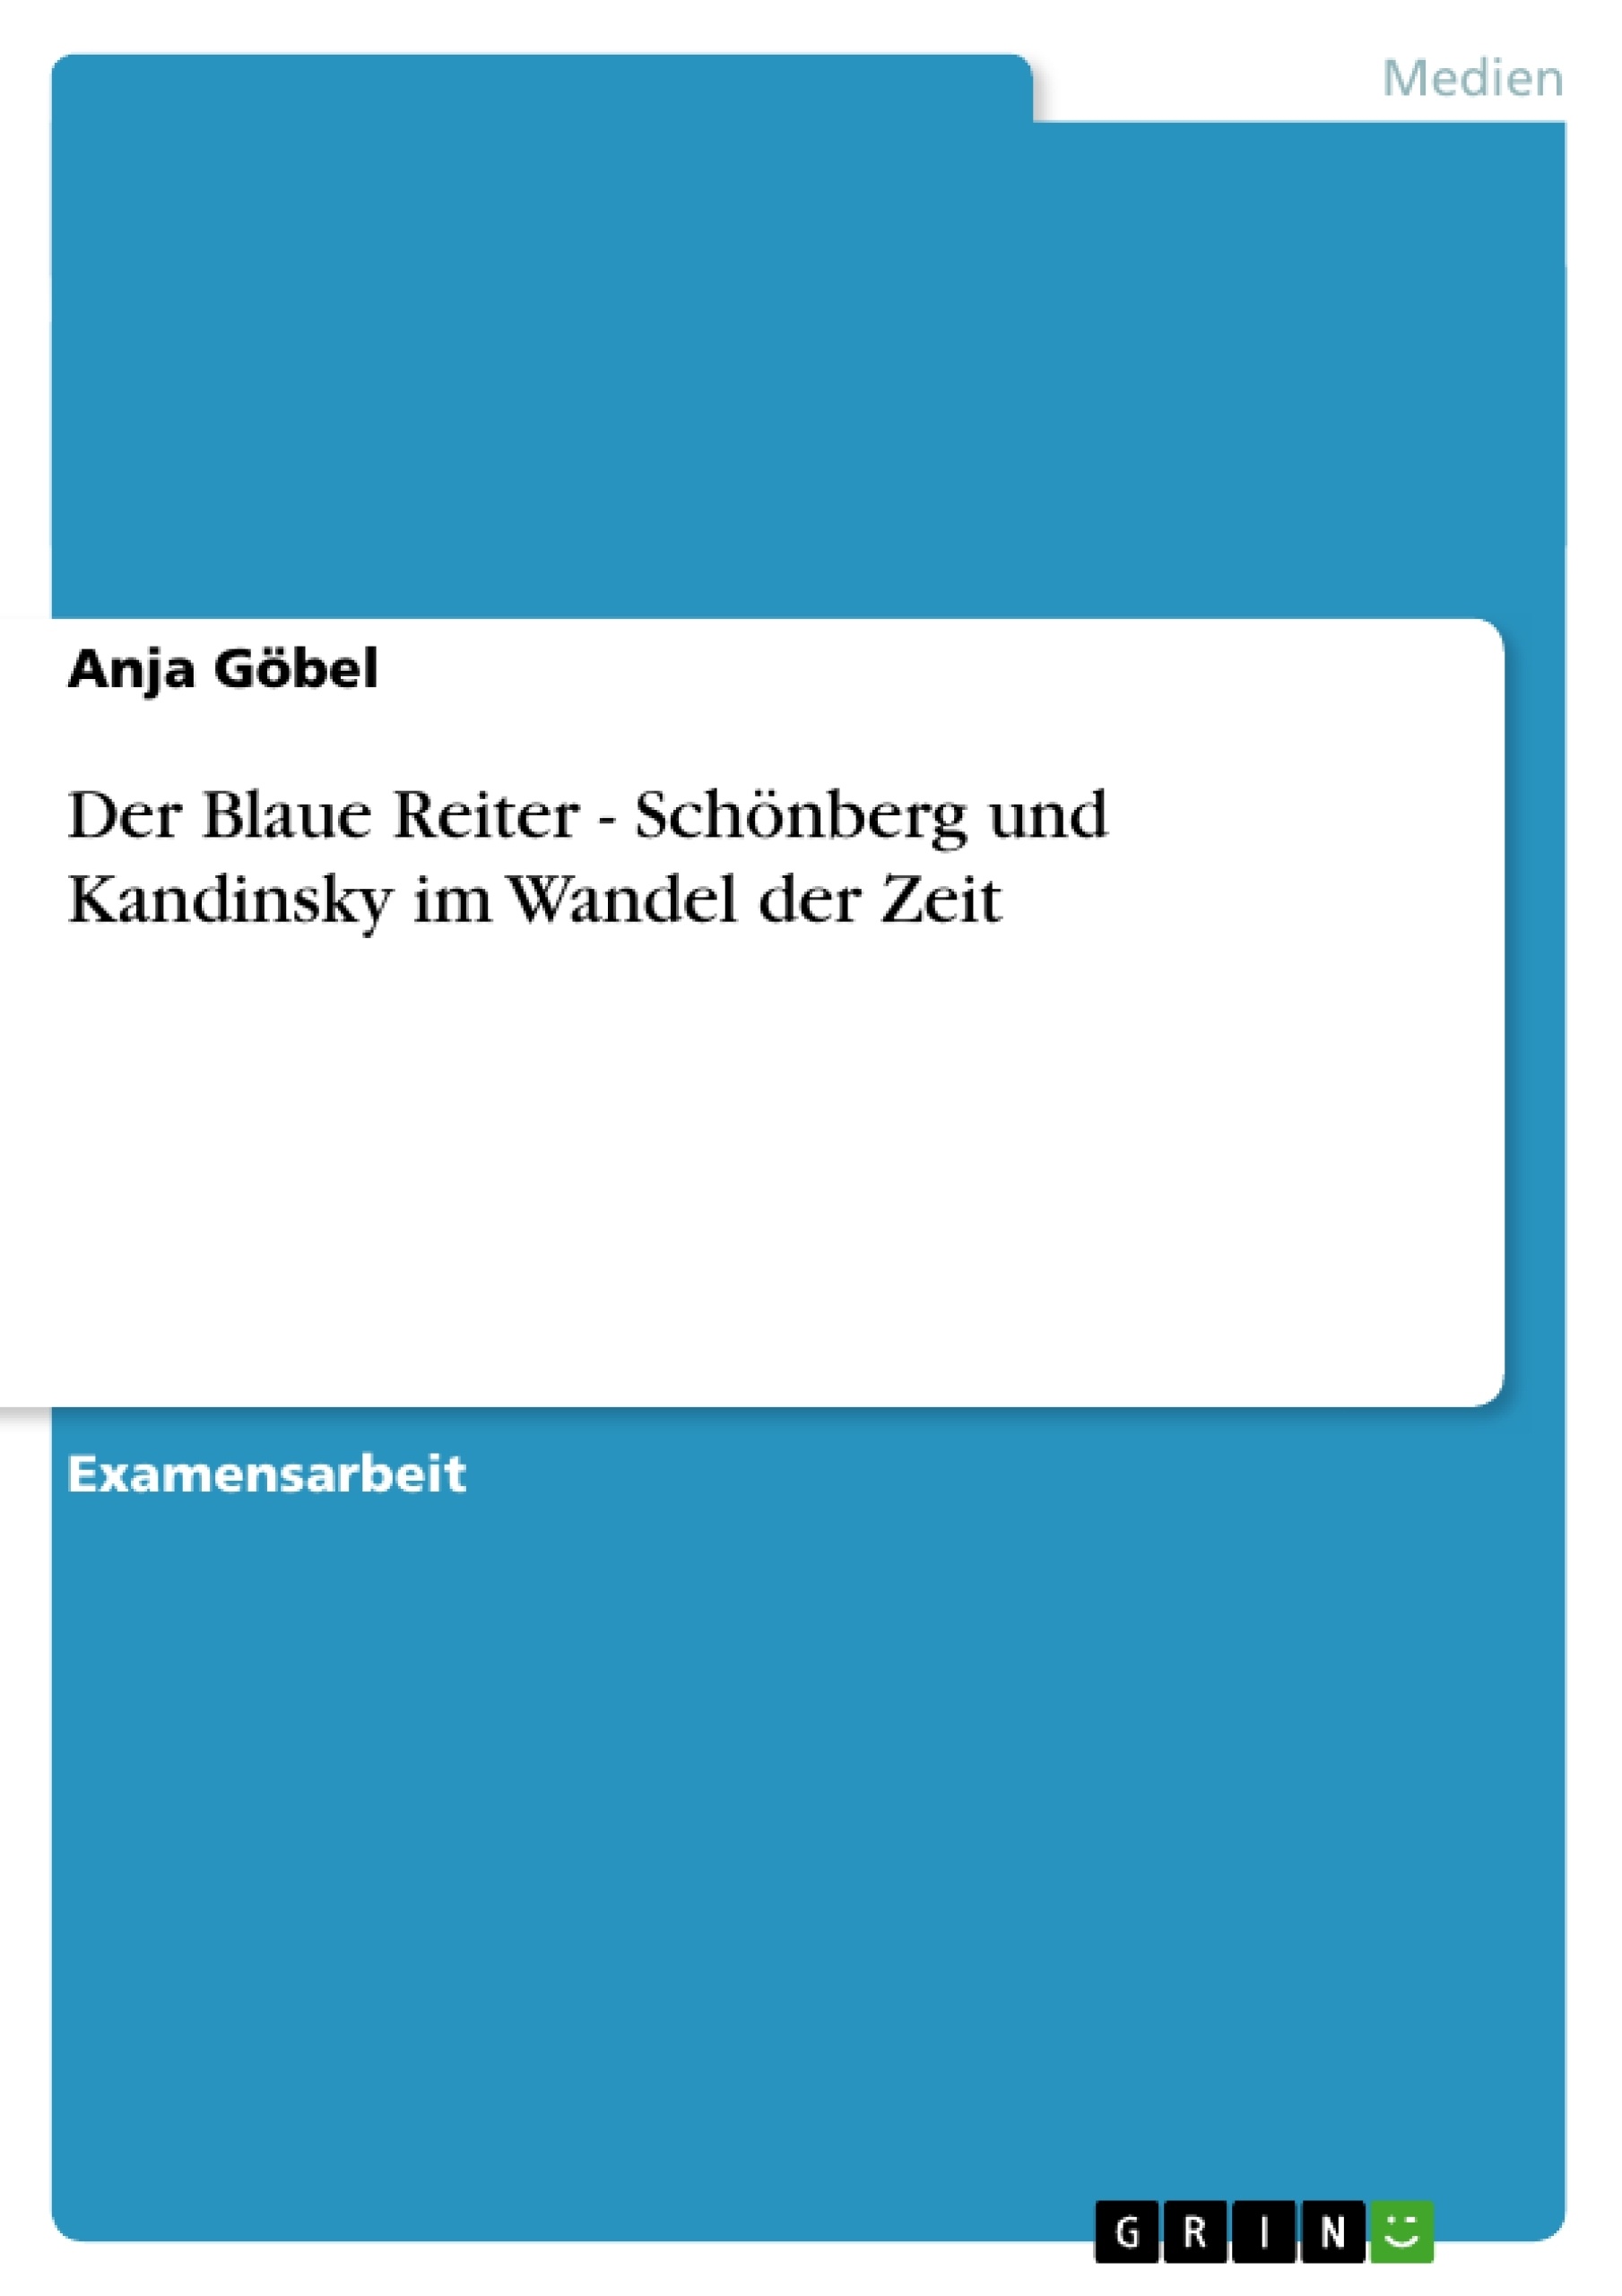 Titre: Der Blaue Reiter - Schönberg und Kandinsky im Wandel der Zeit